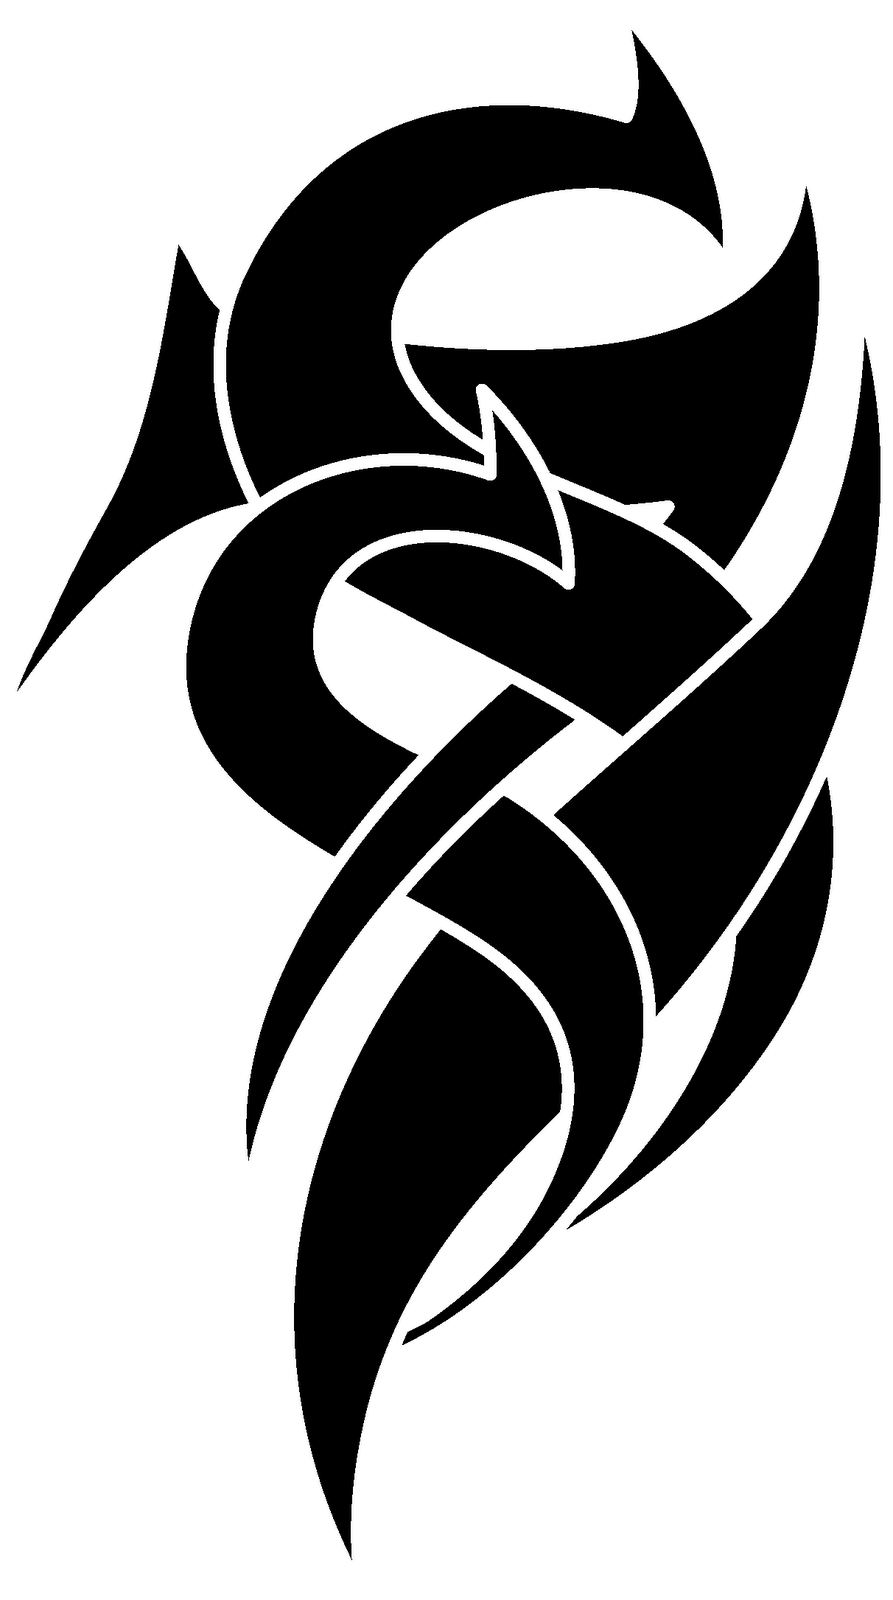 Vecteur Stock Luxury Royal logo design for letter S. Golden Wings logo  design isolated on black background. Luxury logo template for letter S. |  Adobe Stock